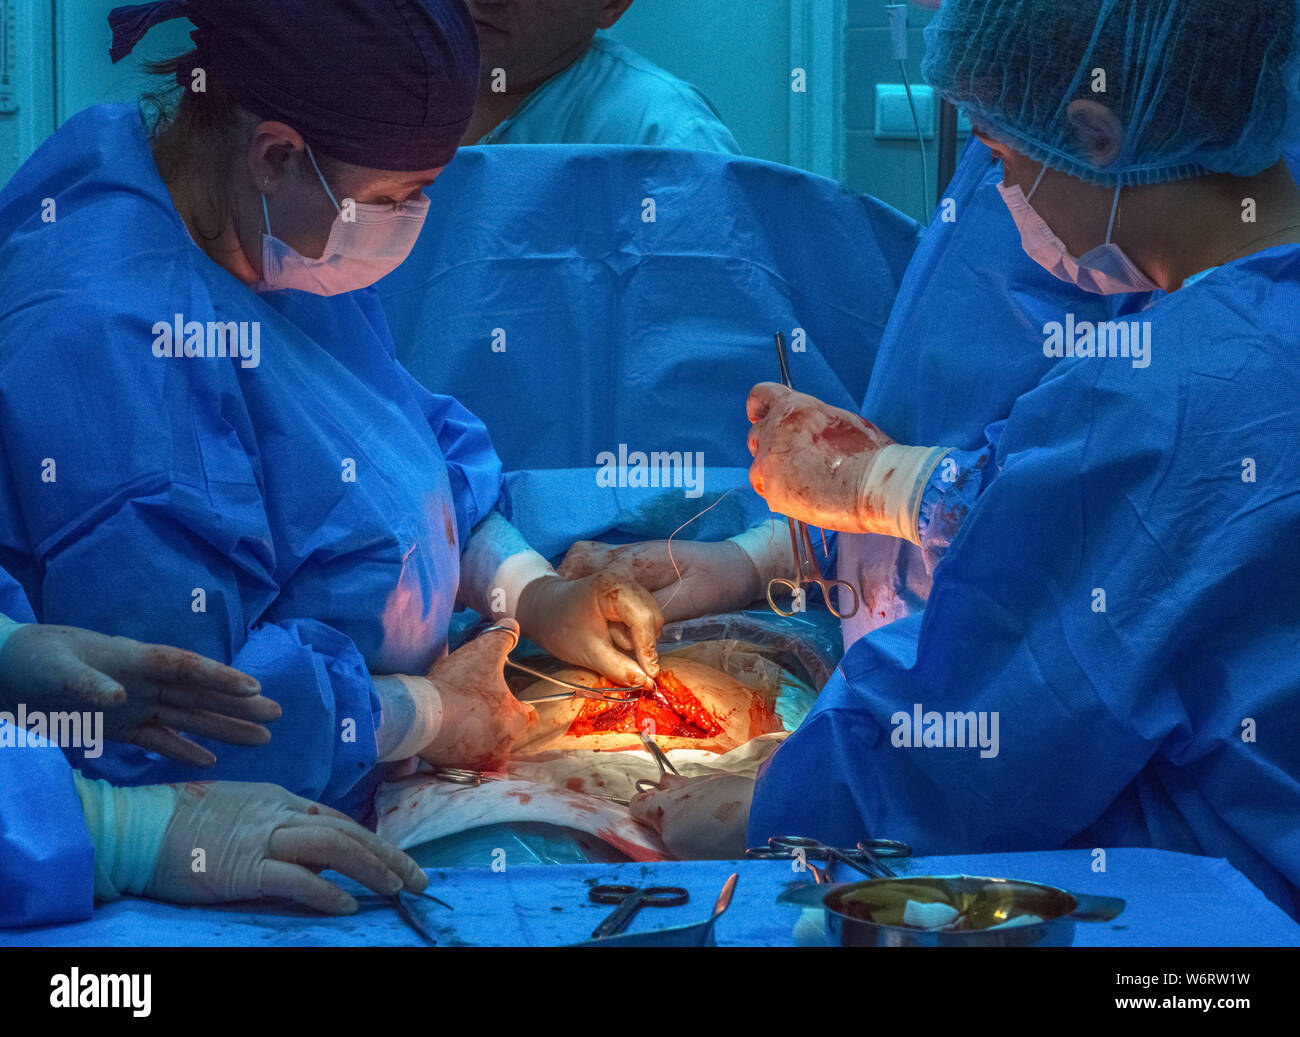 Medico équipe chirurgica in sala operatoria degli addominali taglio cesareo durante il parto. Foto Stock